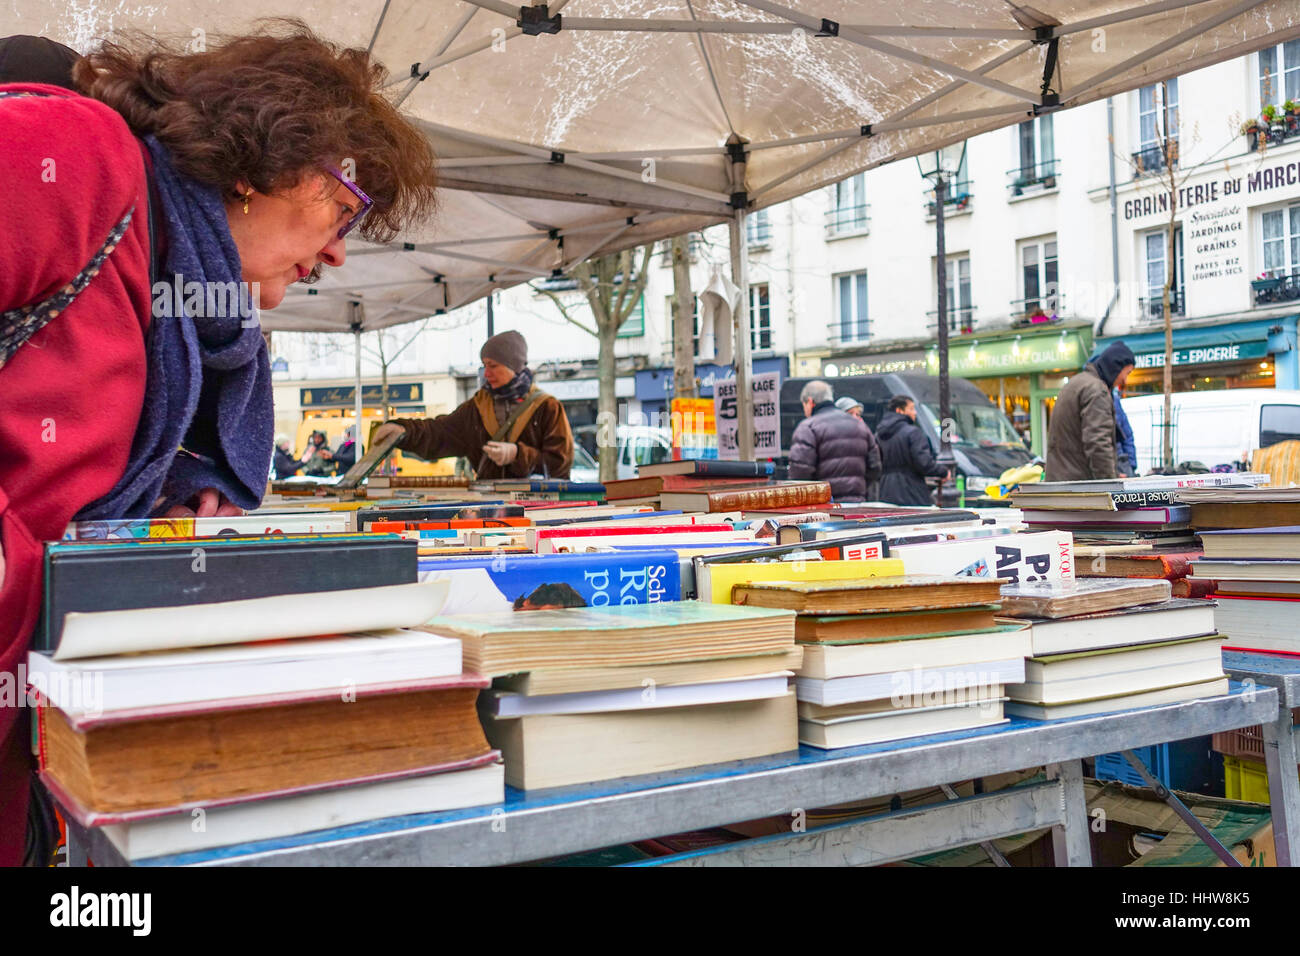 Buch stand am Flohmarkt am Ort d'aligre, auf dem Platz Aligre. Paris, Frankreich Stockfoto